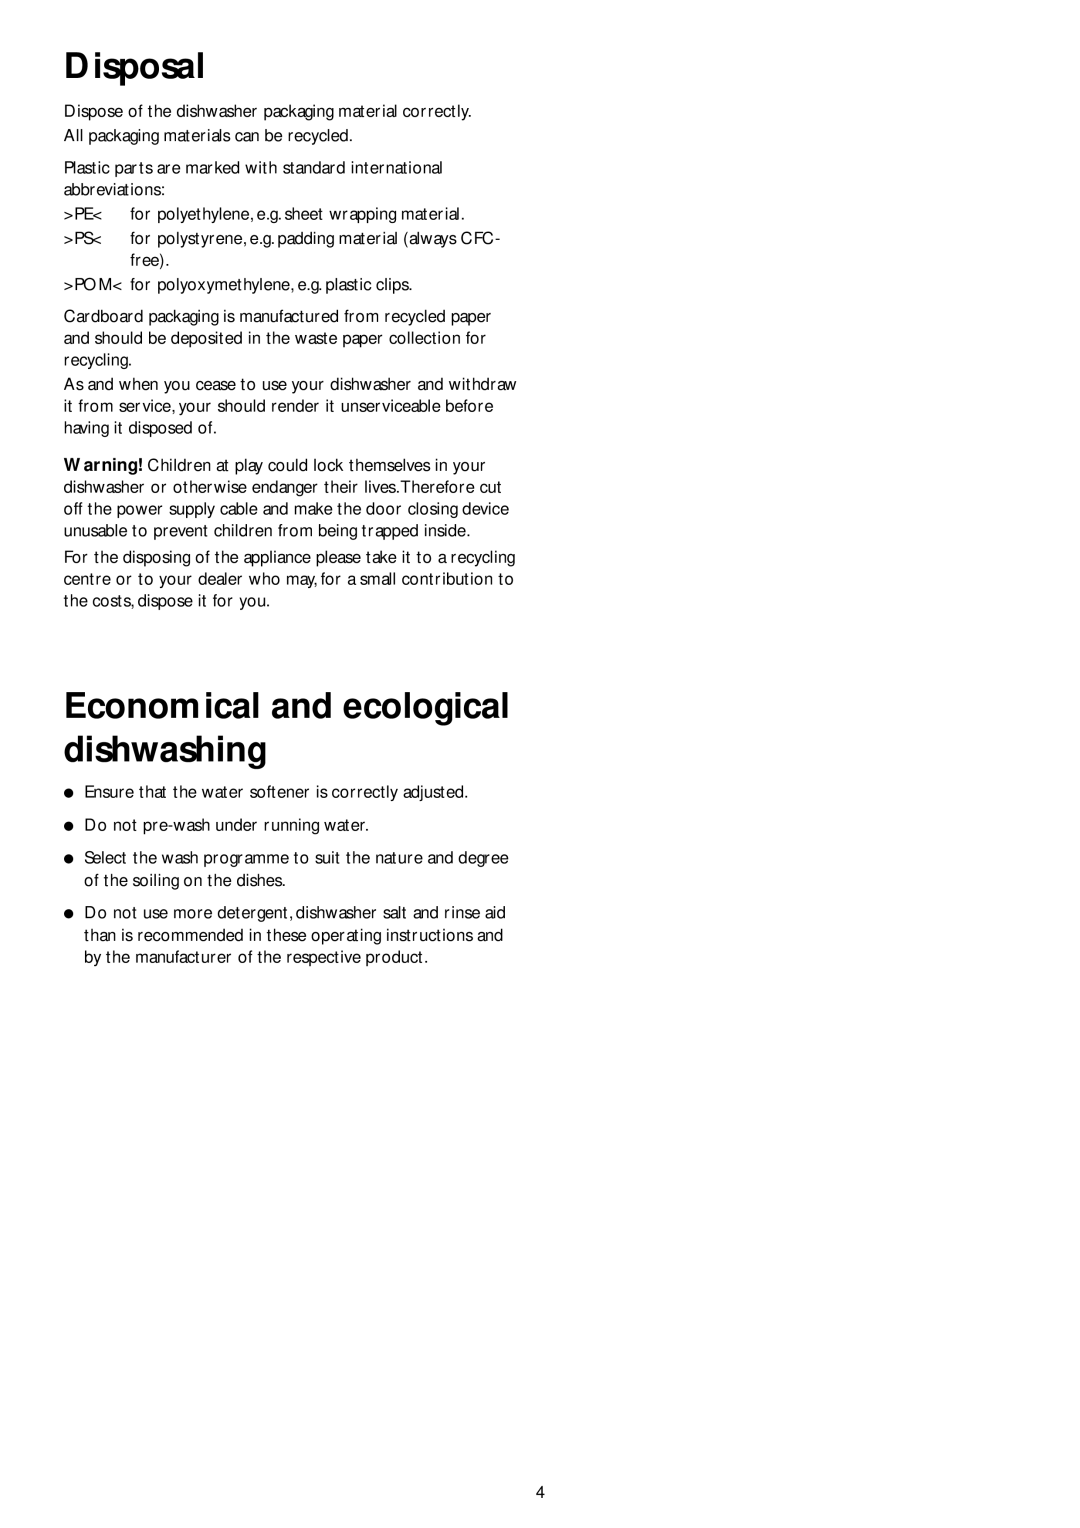 John Lewis JLDWW 1201 instruction manual Disposal, Economical and ecological dishwashing 